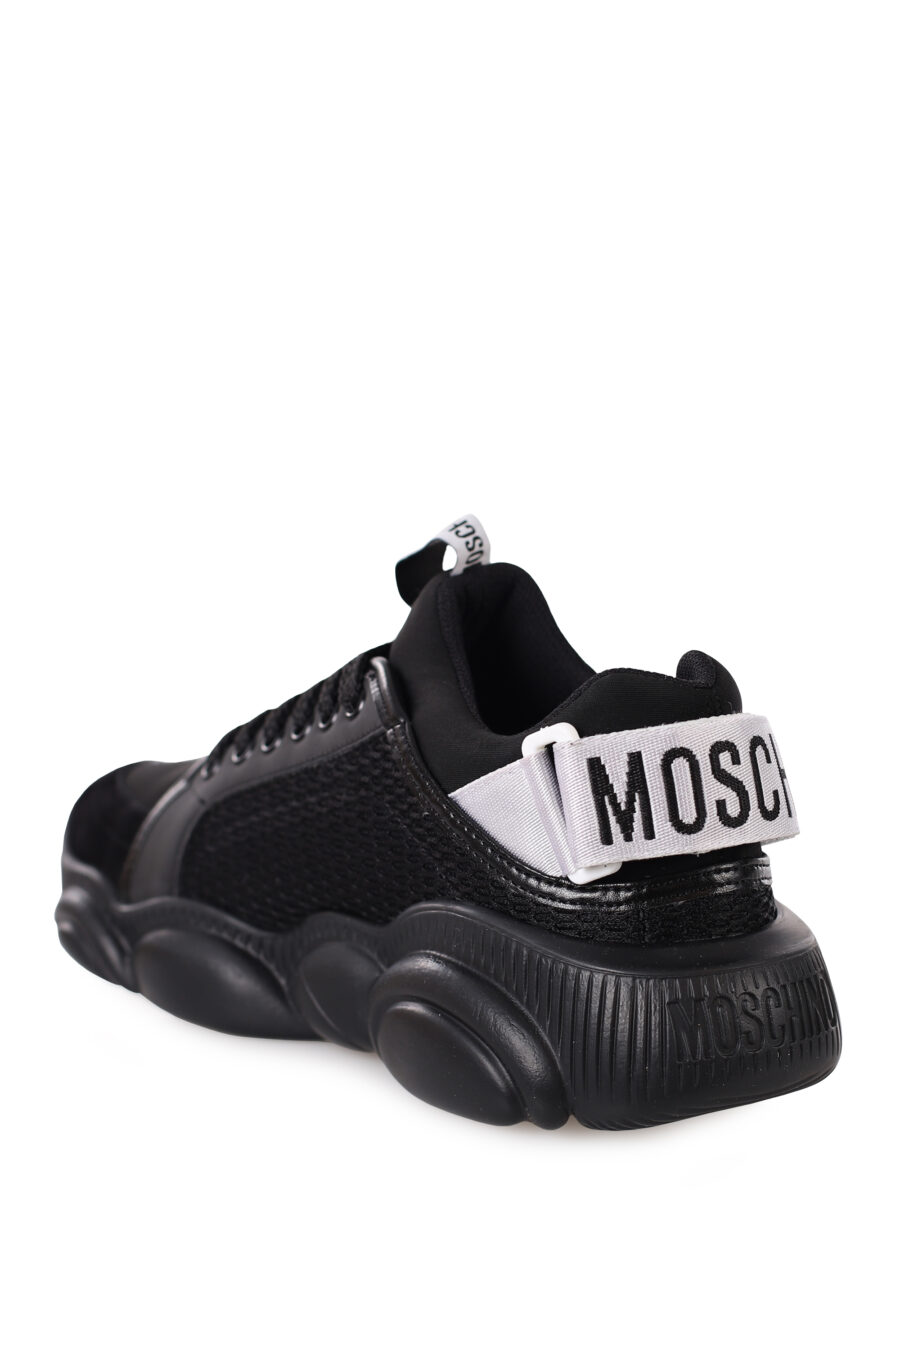 Zapatillas negras "Orso35" - IMG 0367